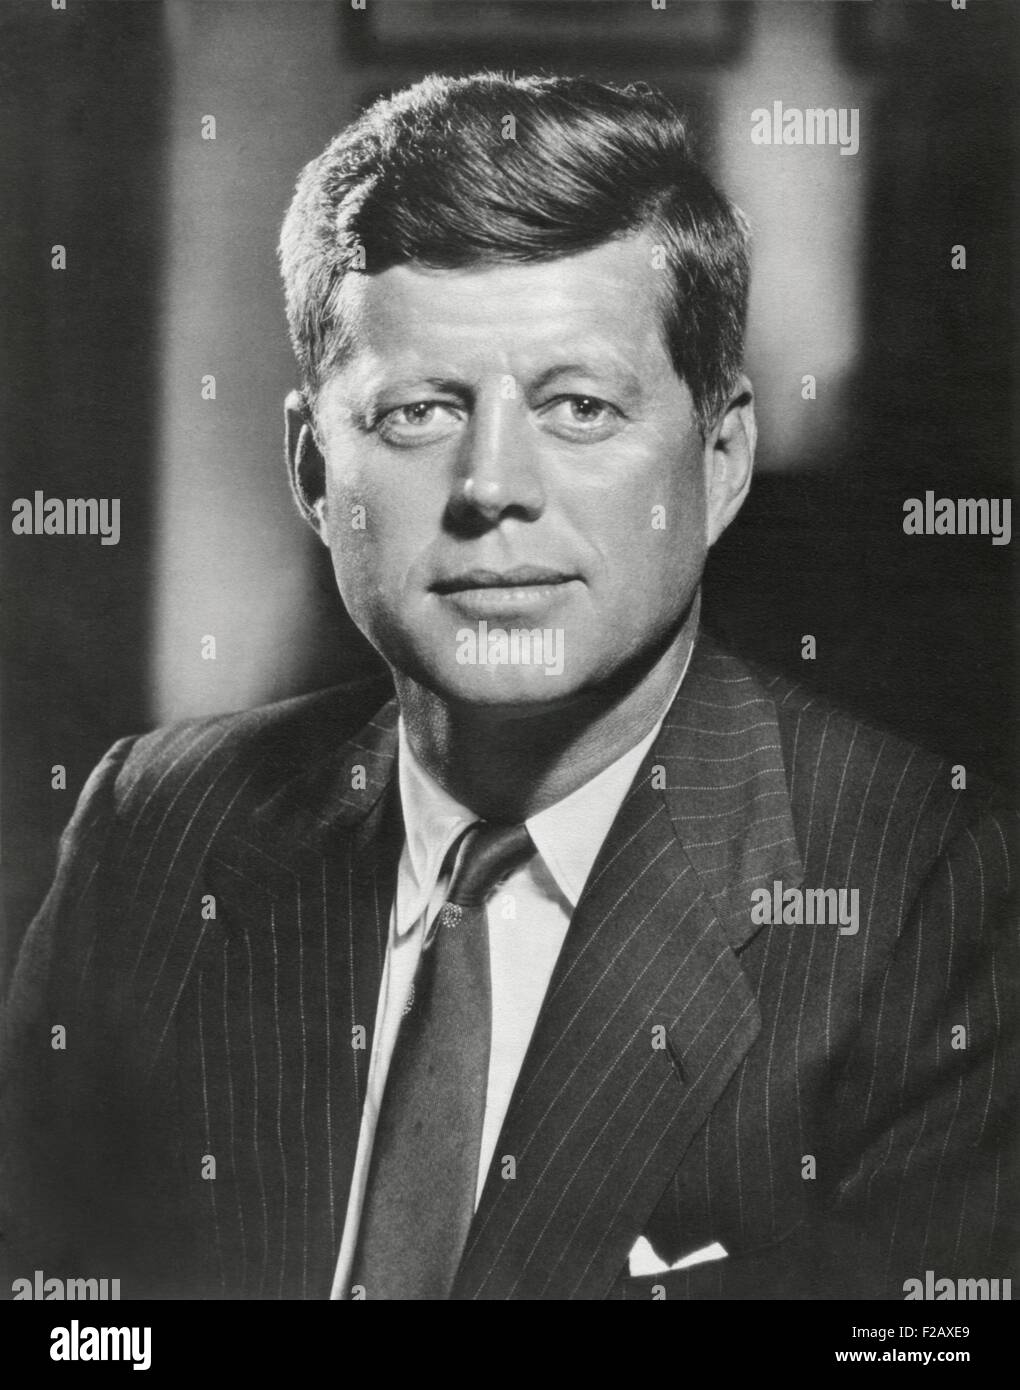 Il presidente John Kennedy. Ritratto preso da Bachrach, ca. 1960-61. (BSLOC 2015 2 223) Foto Stock